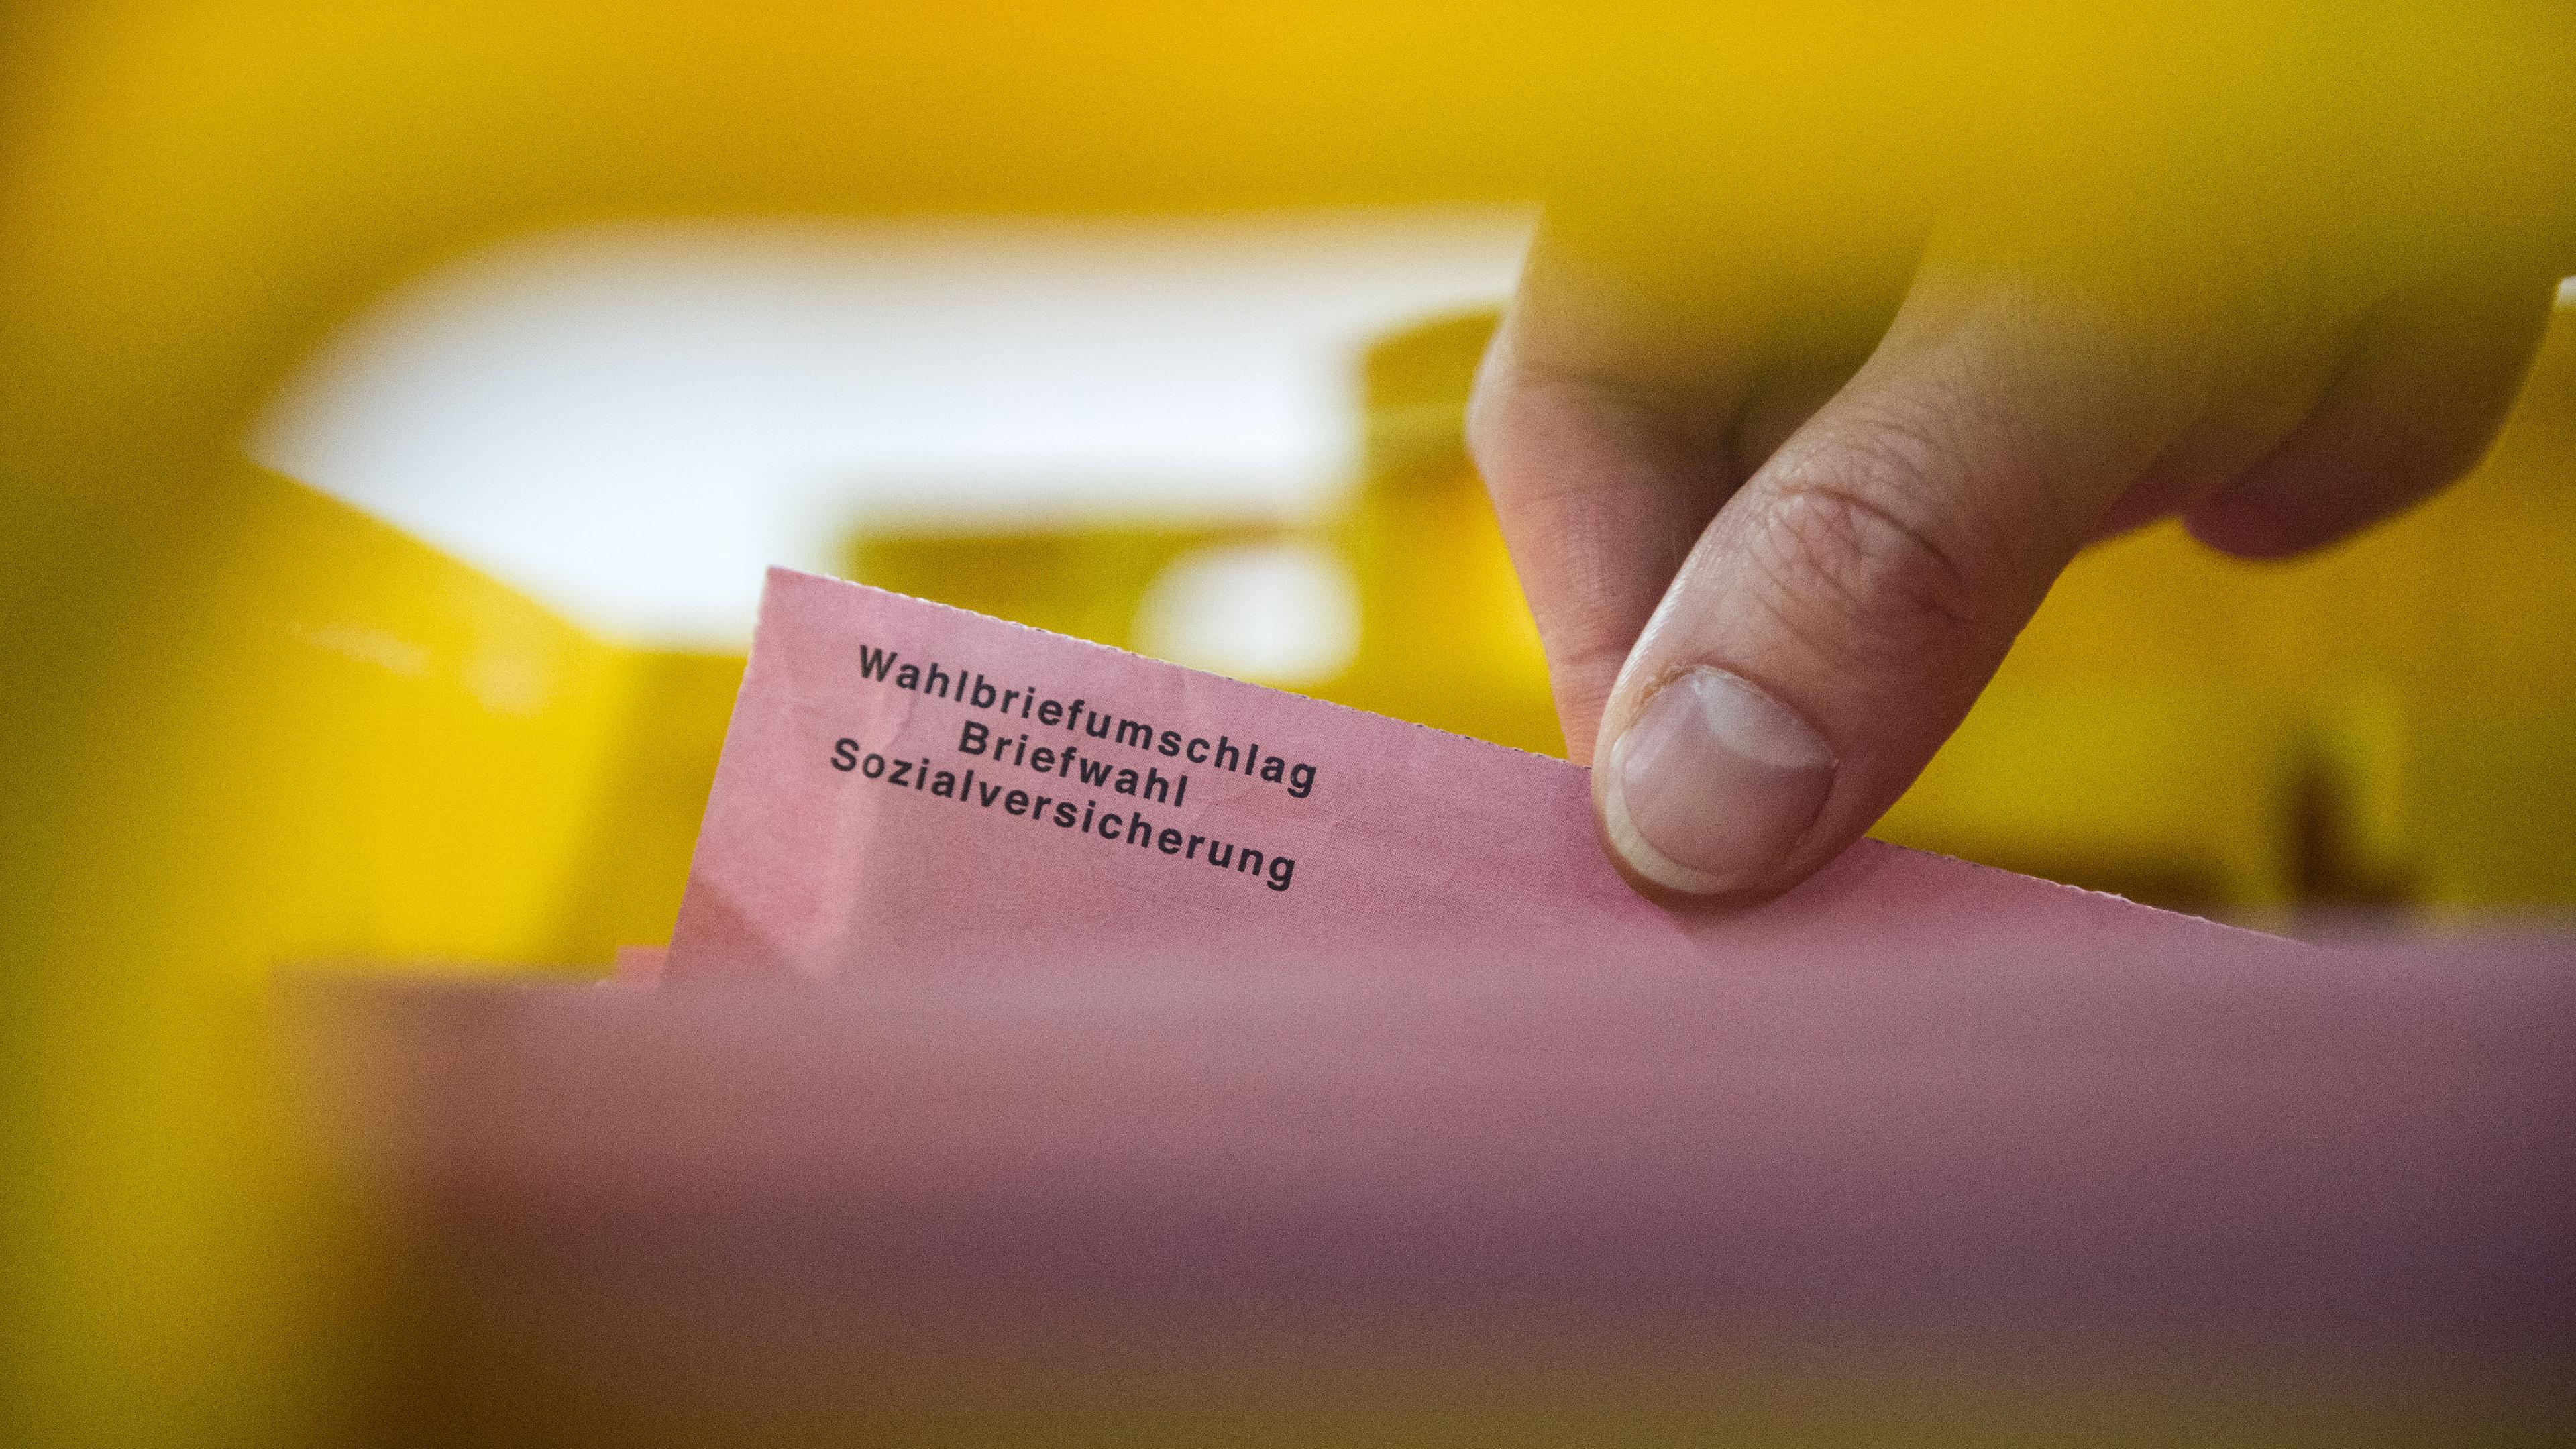 Ein Besucher zieht, in einer Lagerhalle in Berlin, einen Wahlbrief zur Auswertung, aufgenommen am 01.06.2017